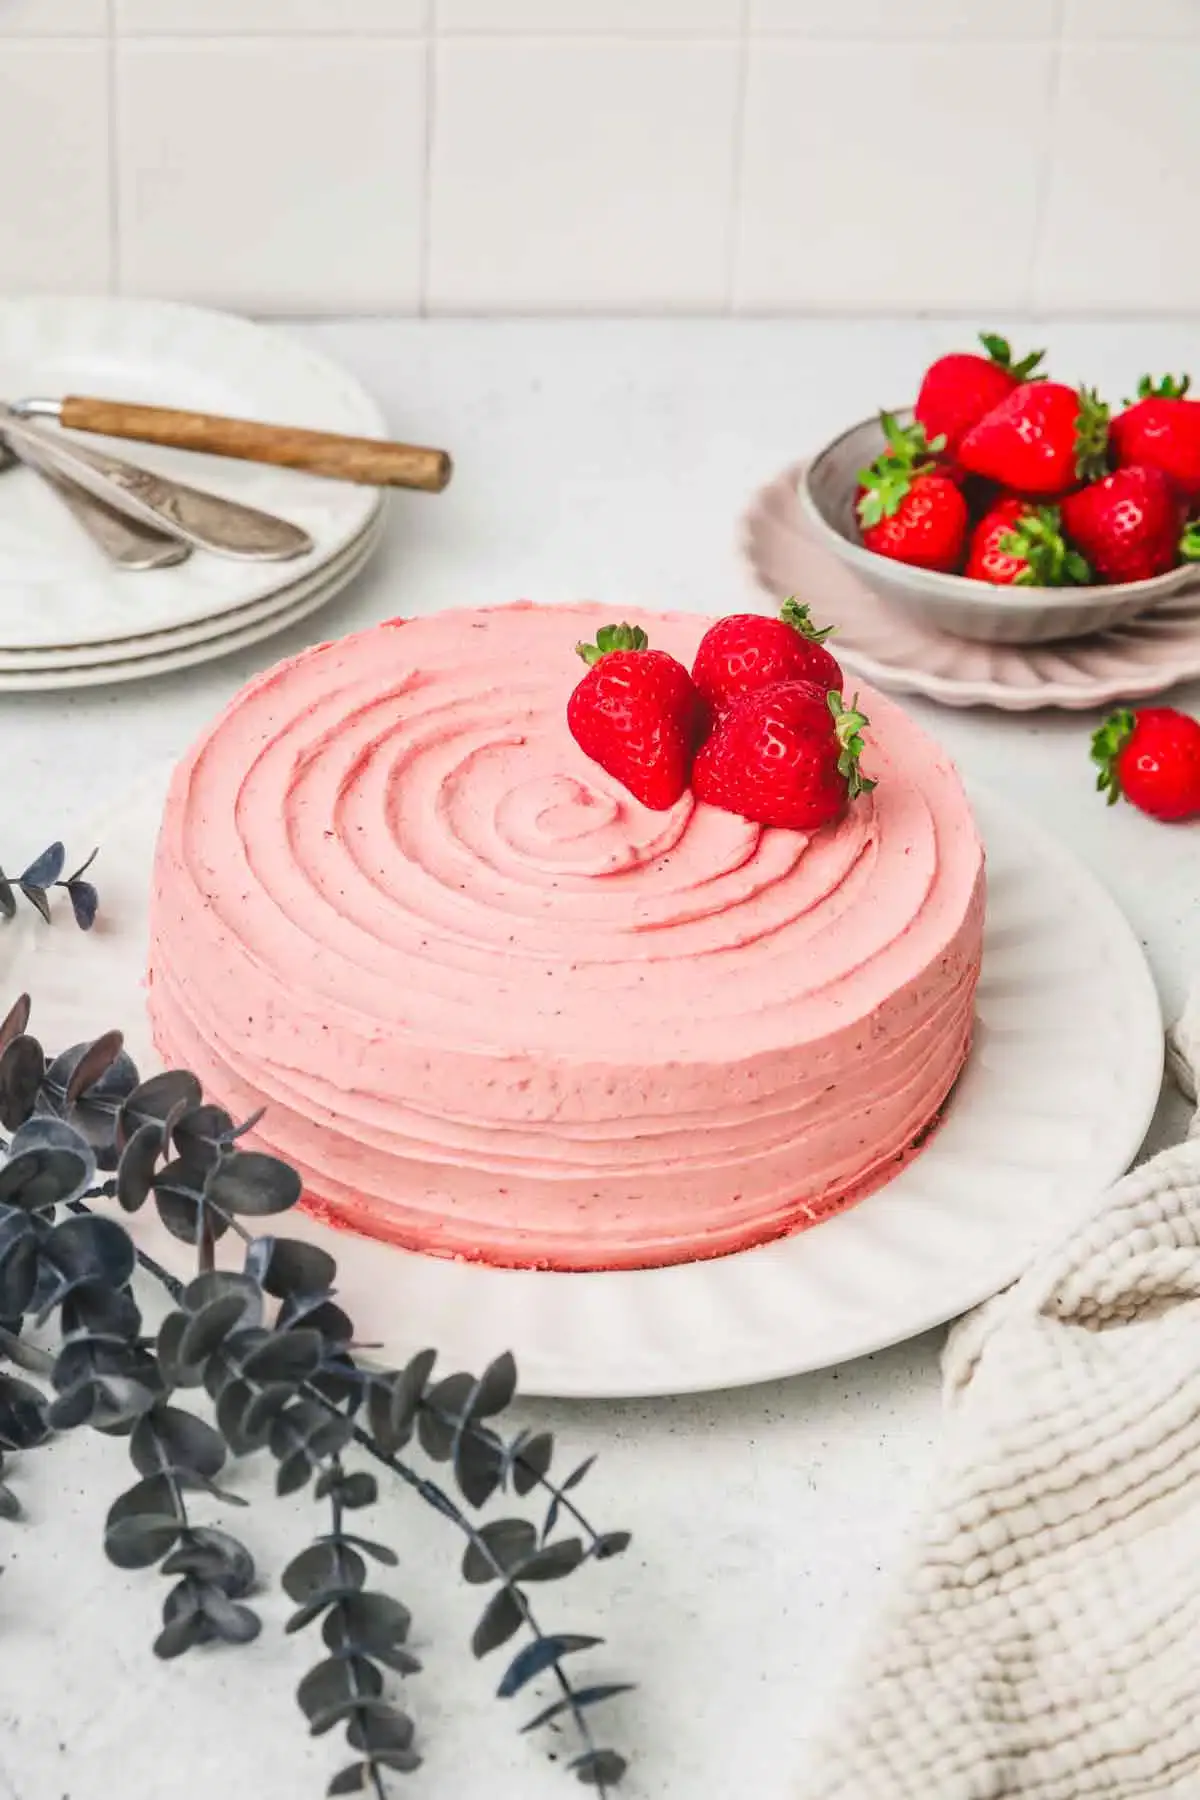 gâteau rose aux fraises dans une assiette sur une table